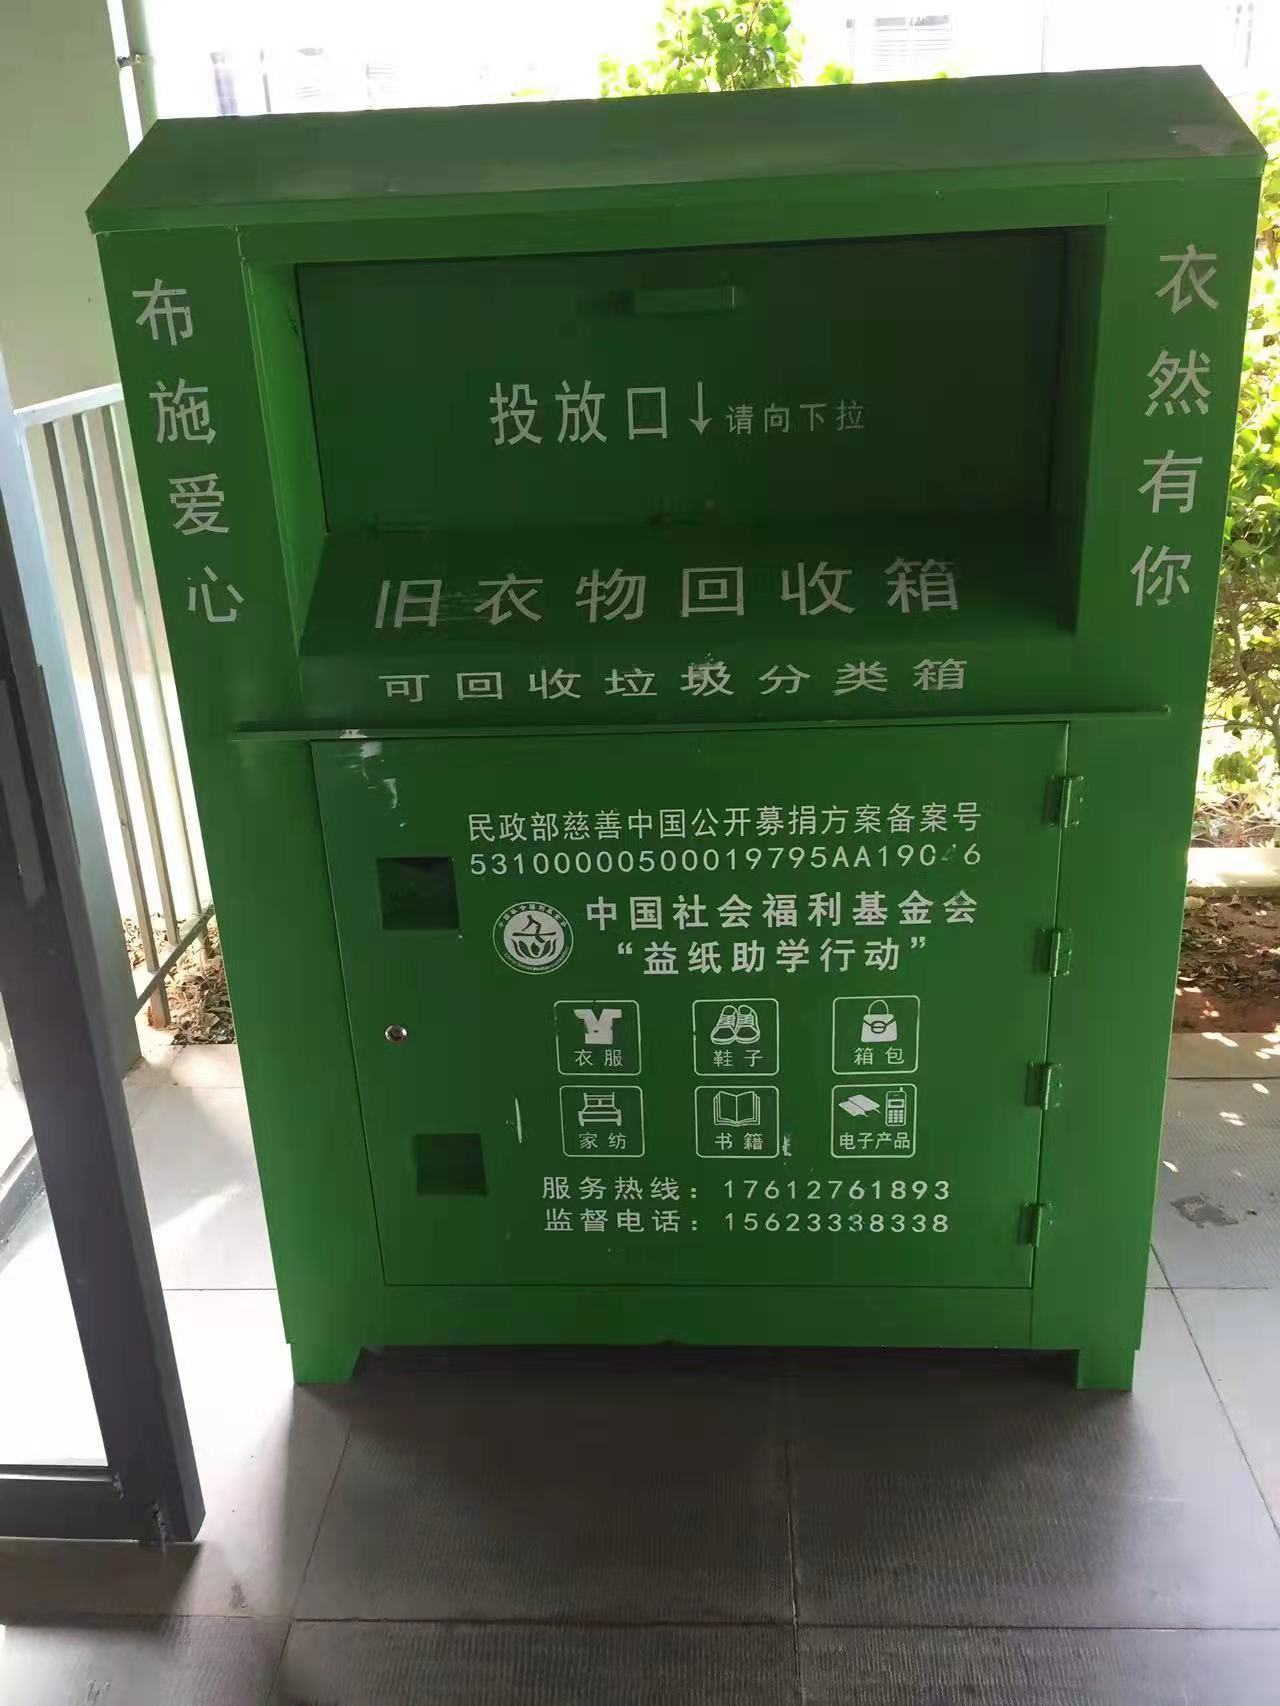 性保护与绿色发展基金会(以下简称中国绿发会)在武汉设立的绿色回收箱